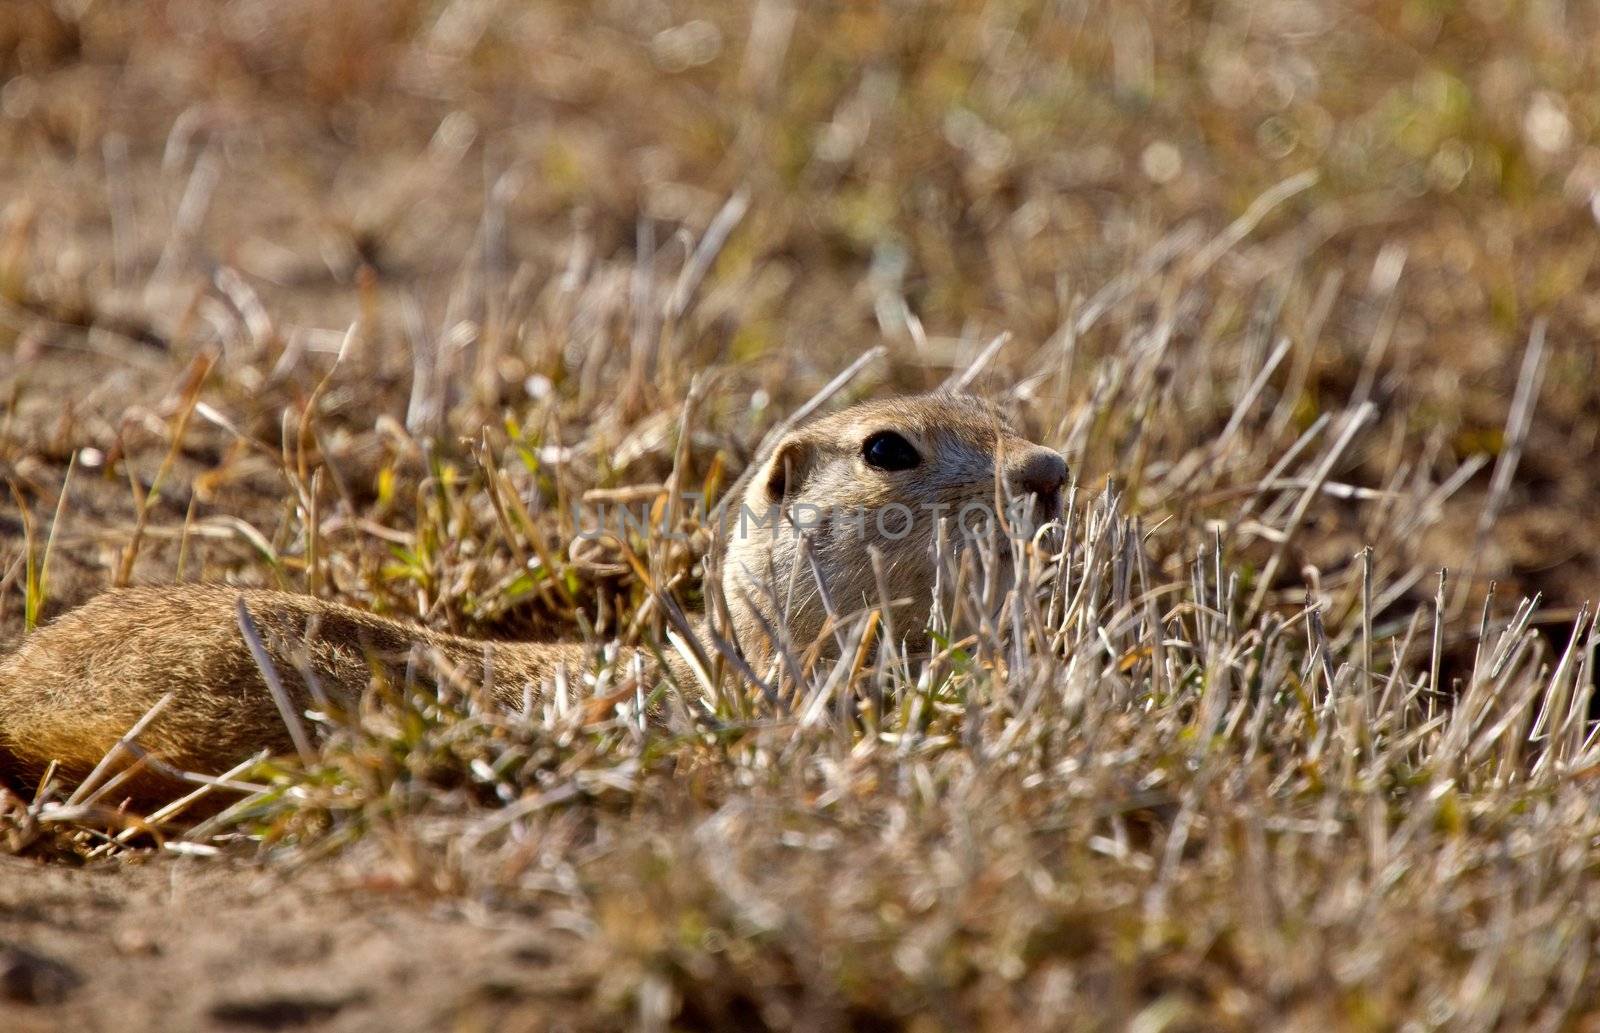 Prairie Dog Gopher Saskatchewan Canada by pictureguy